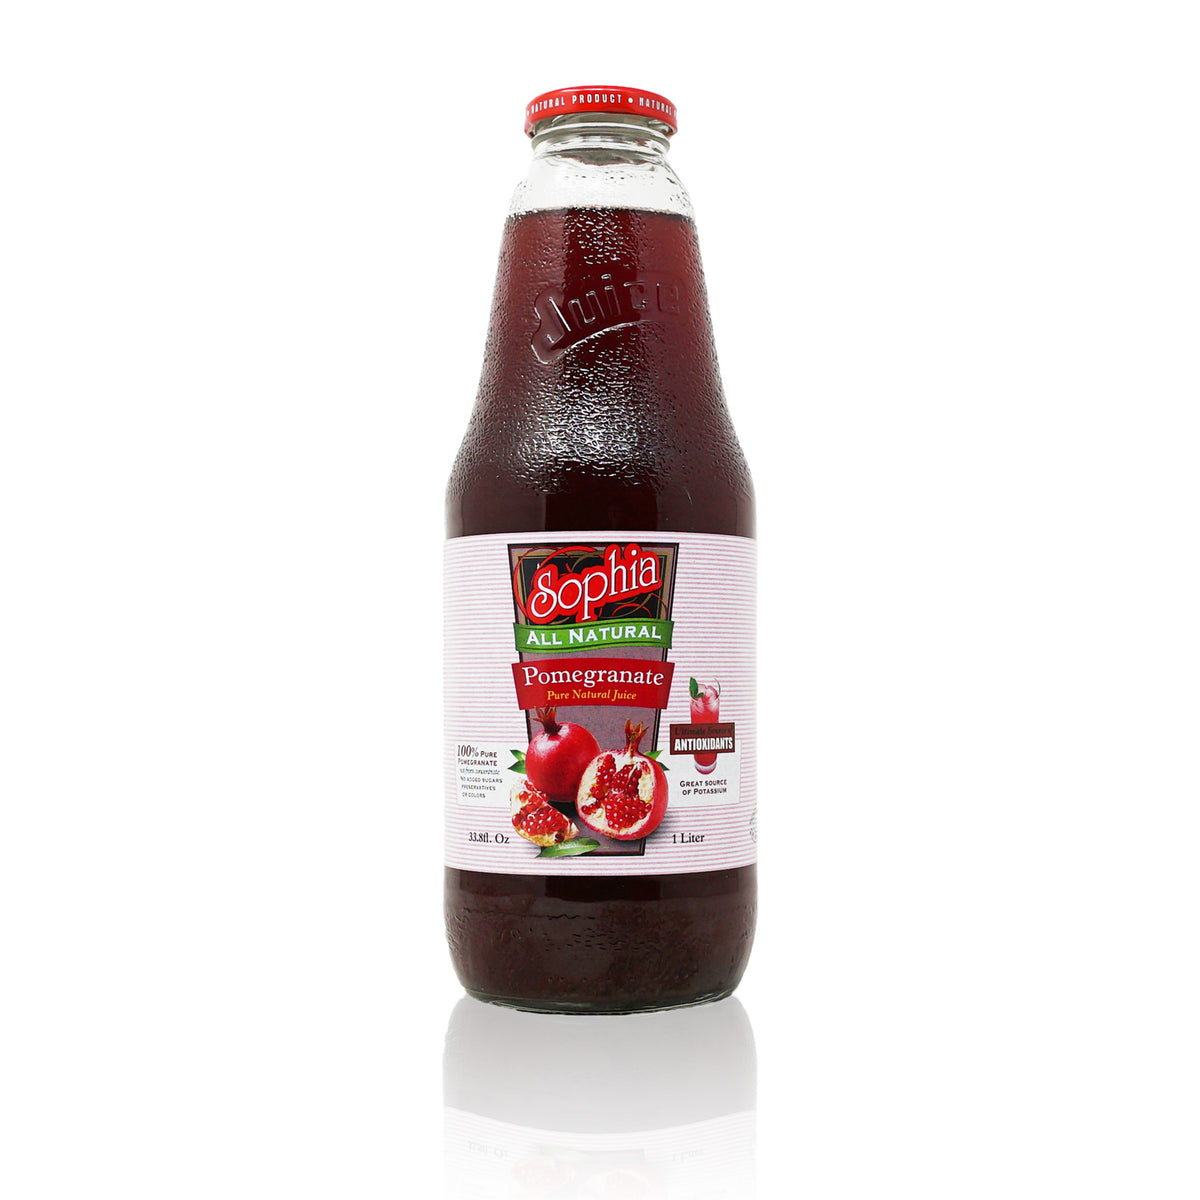 Sophia Pomegranate Juice